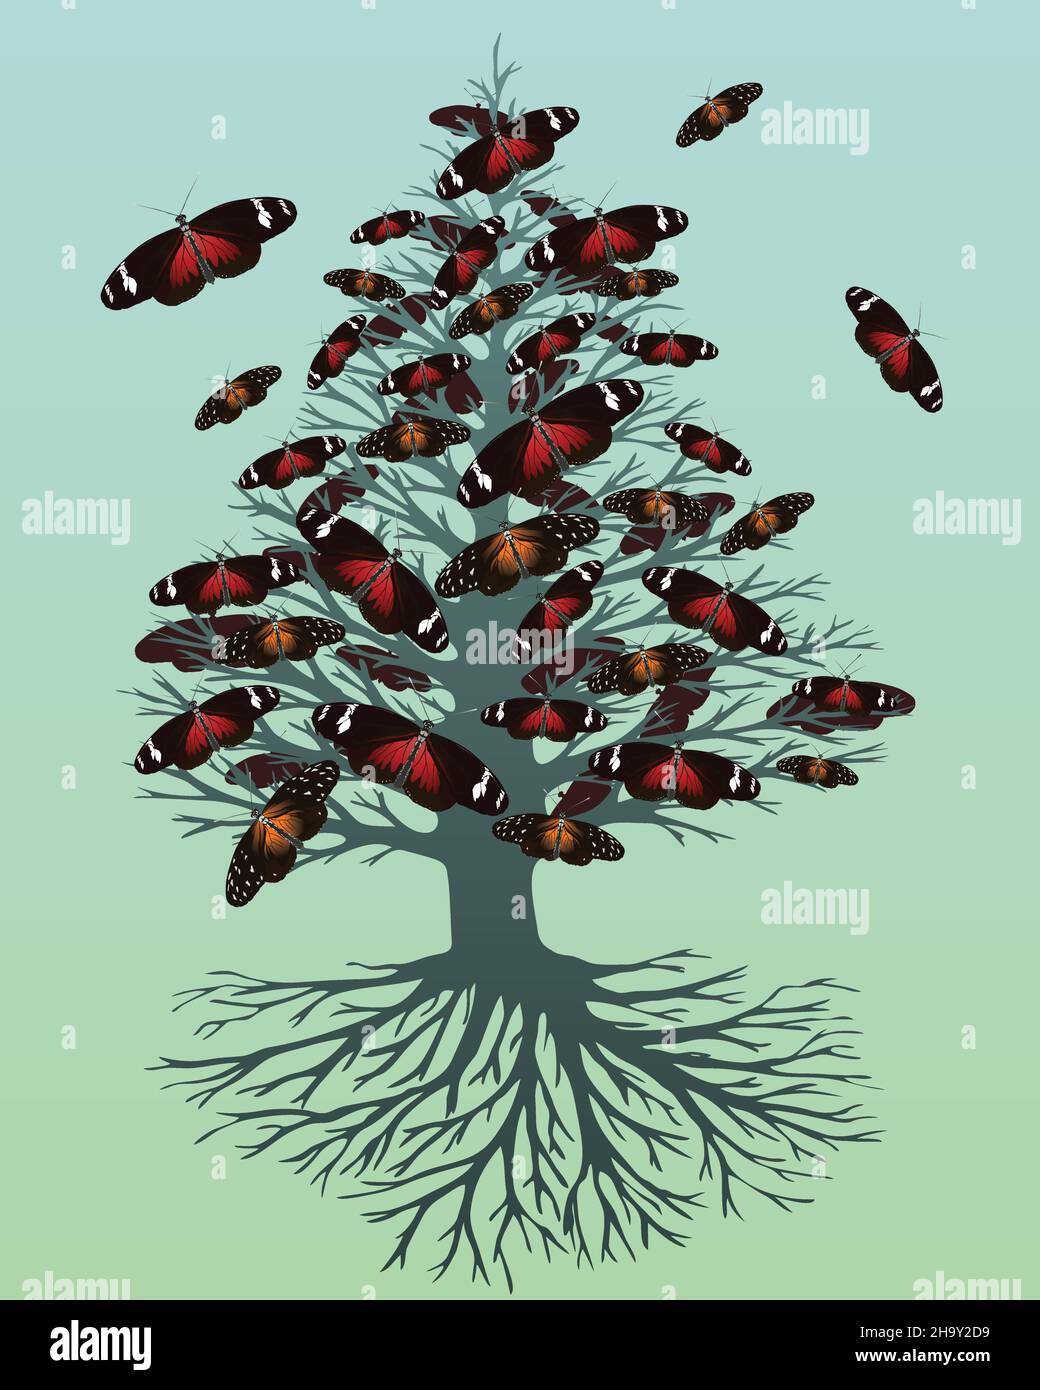 Un'illustrazione vettoriale di un albero di vita o yggdrasil con fiori di farfalla. L'albero ha una forma appuntita. Illustrazione Vettoriale